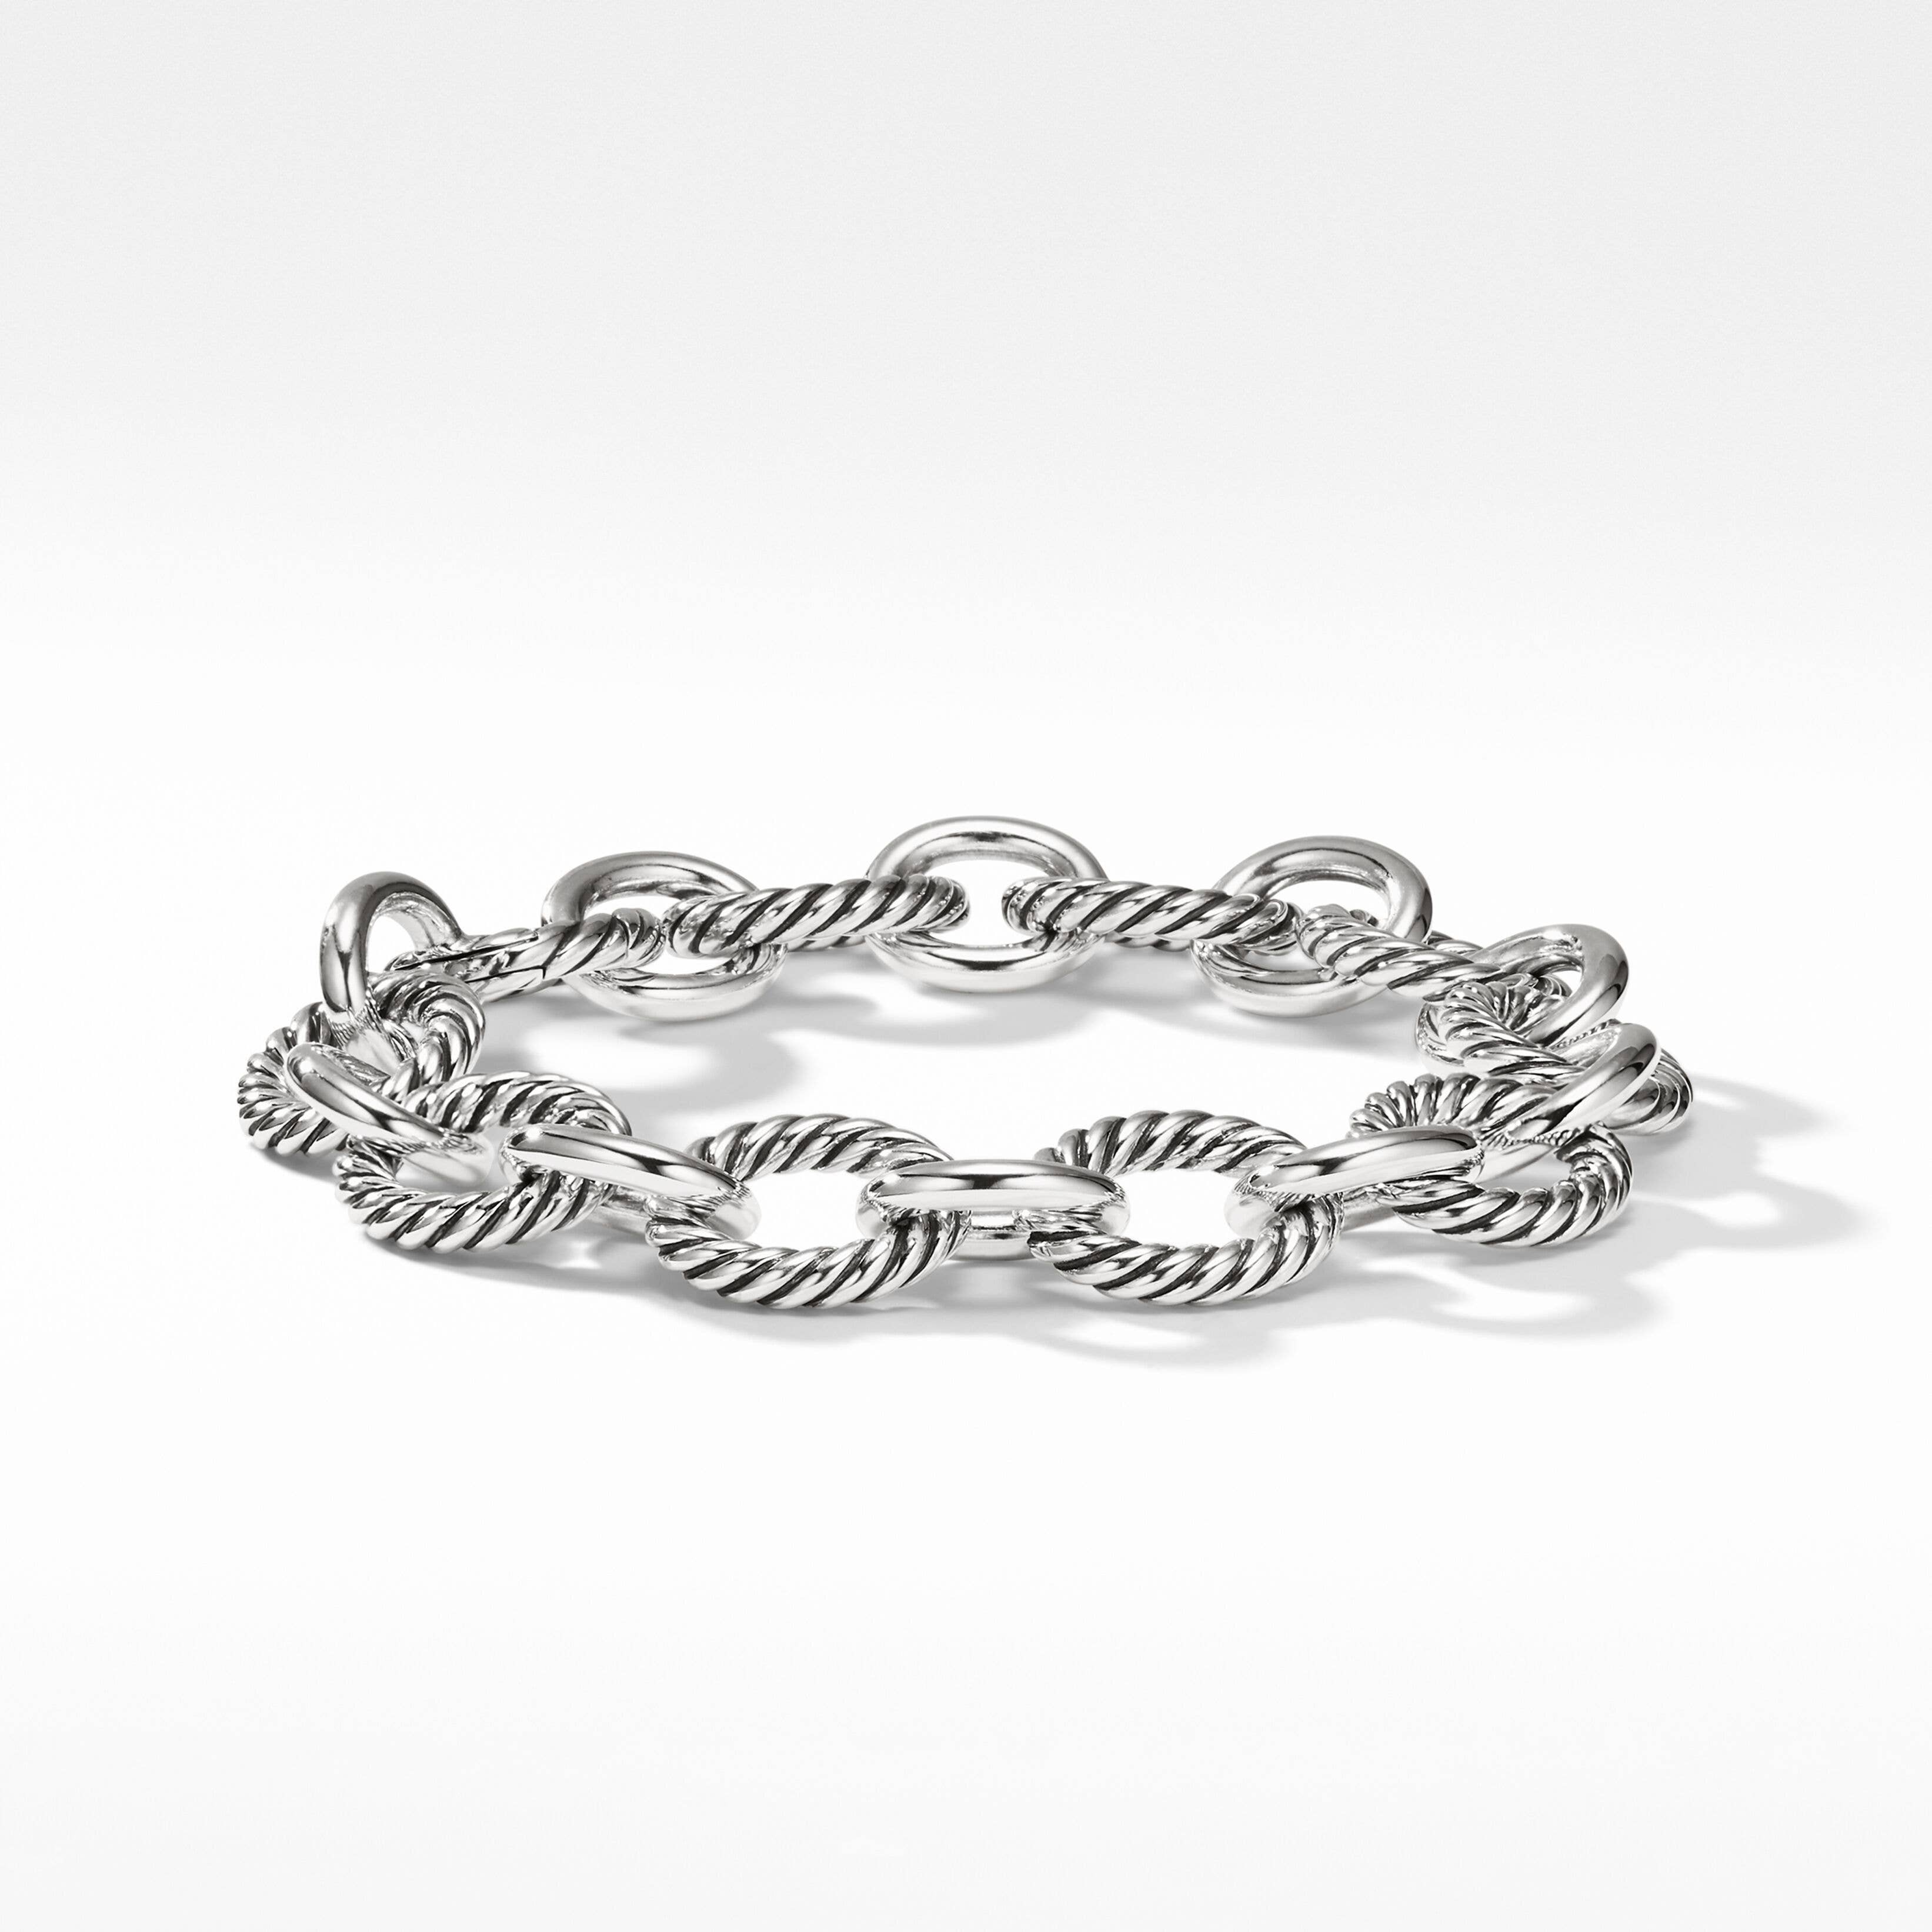 Oval Link Chain Bracelet in Sterling Silver